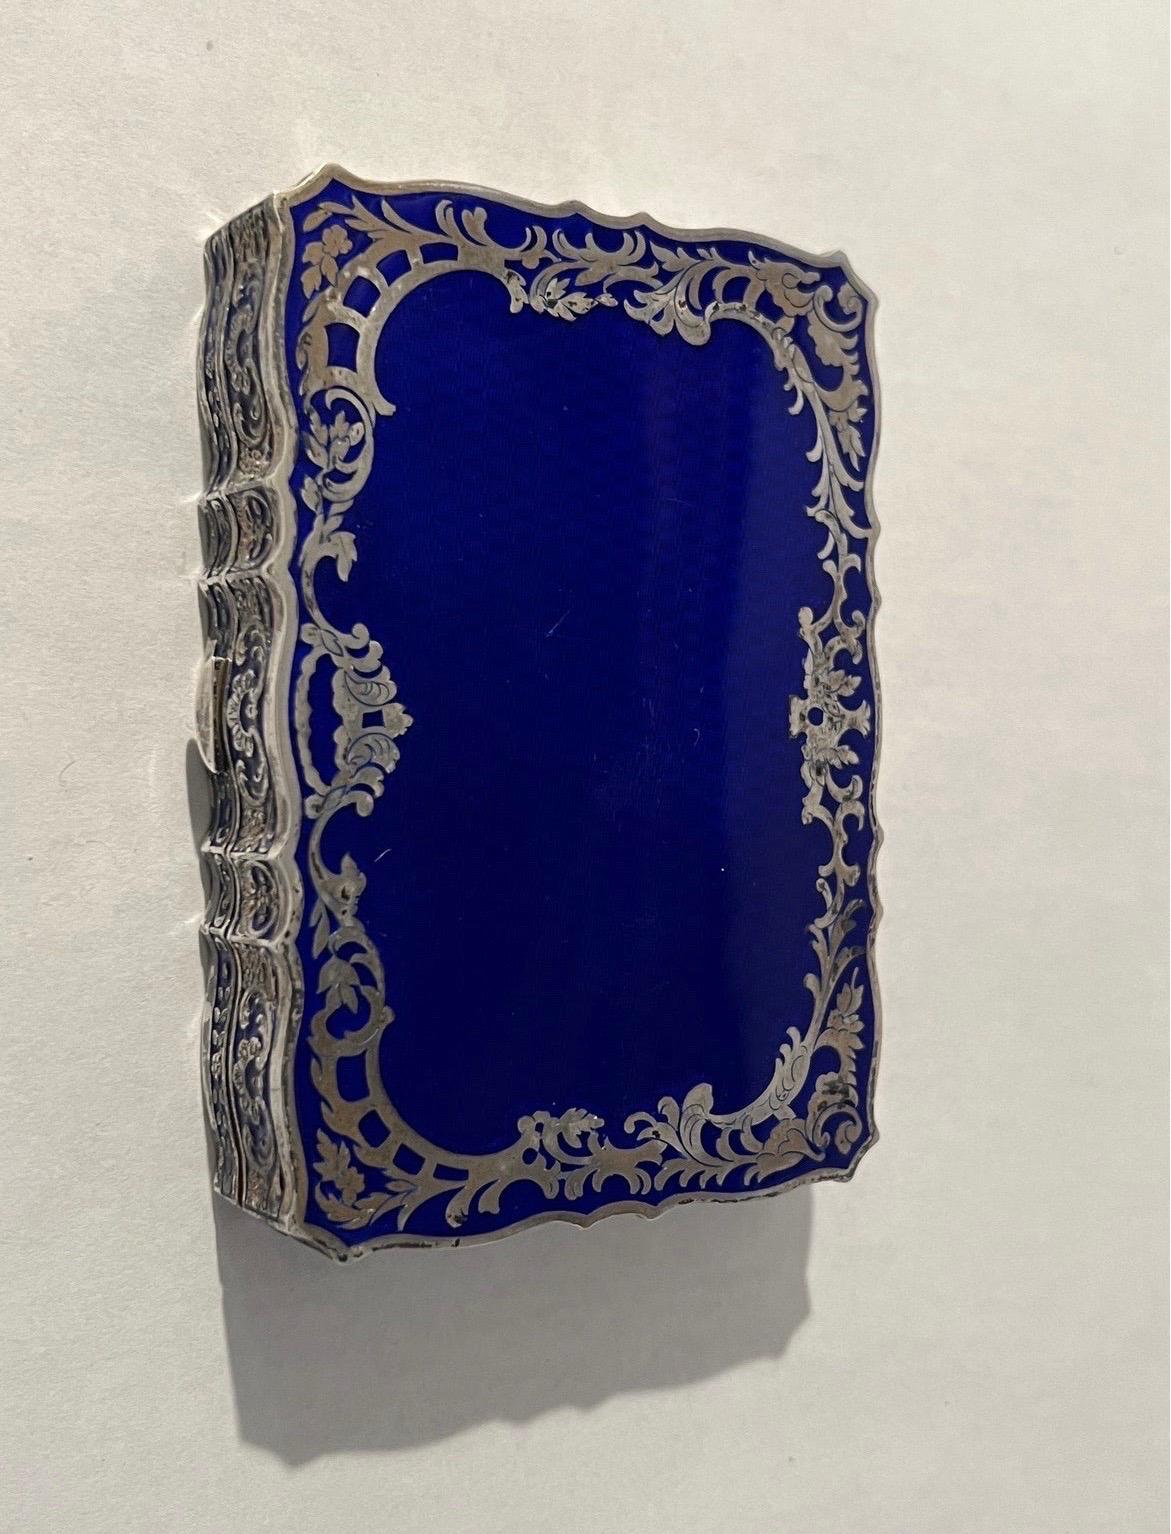 Antique Art Nouveau 985 Sterling Silver & Blue Enamel Austrian or French Compact For Sale 2